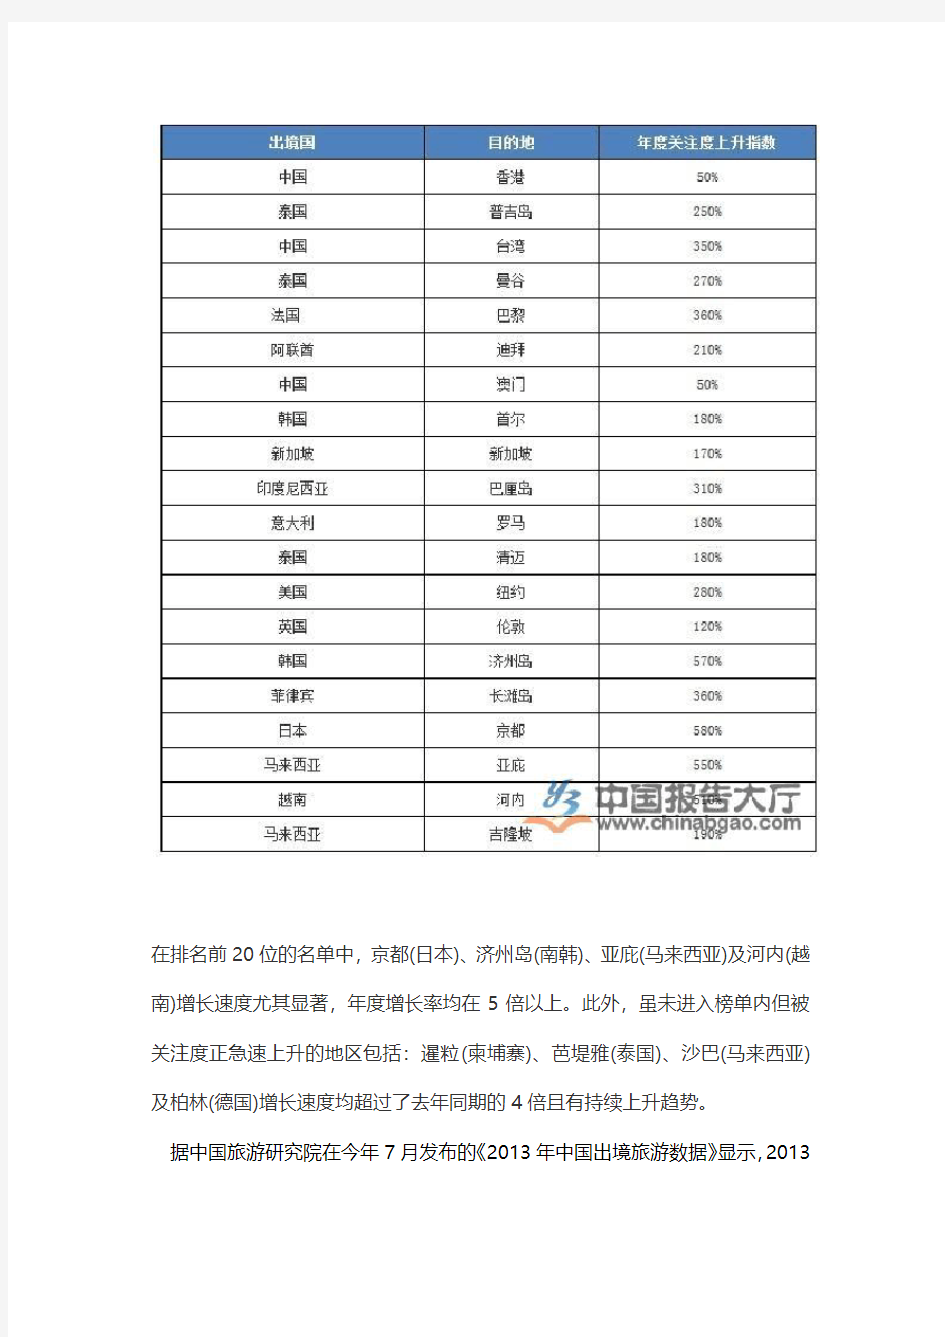 2013中国出境旅游发展现状分析年度报告